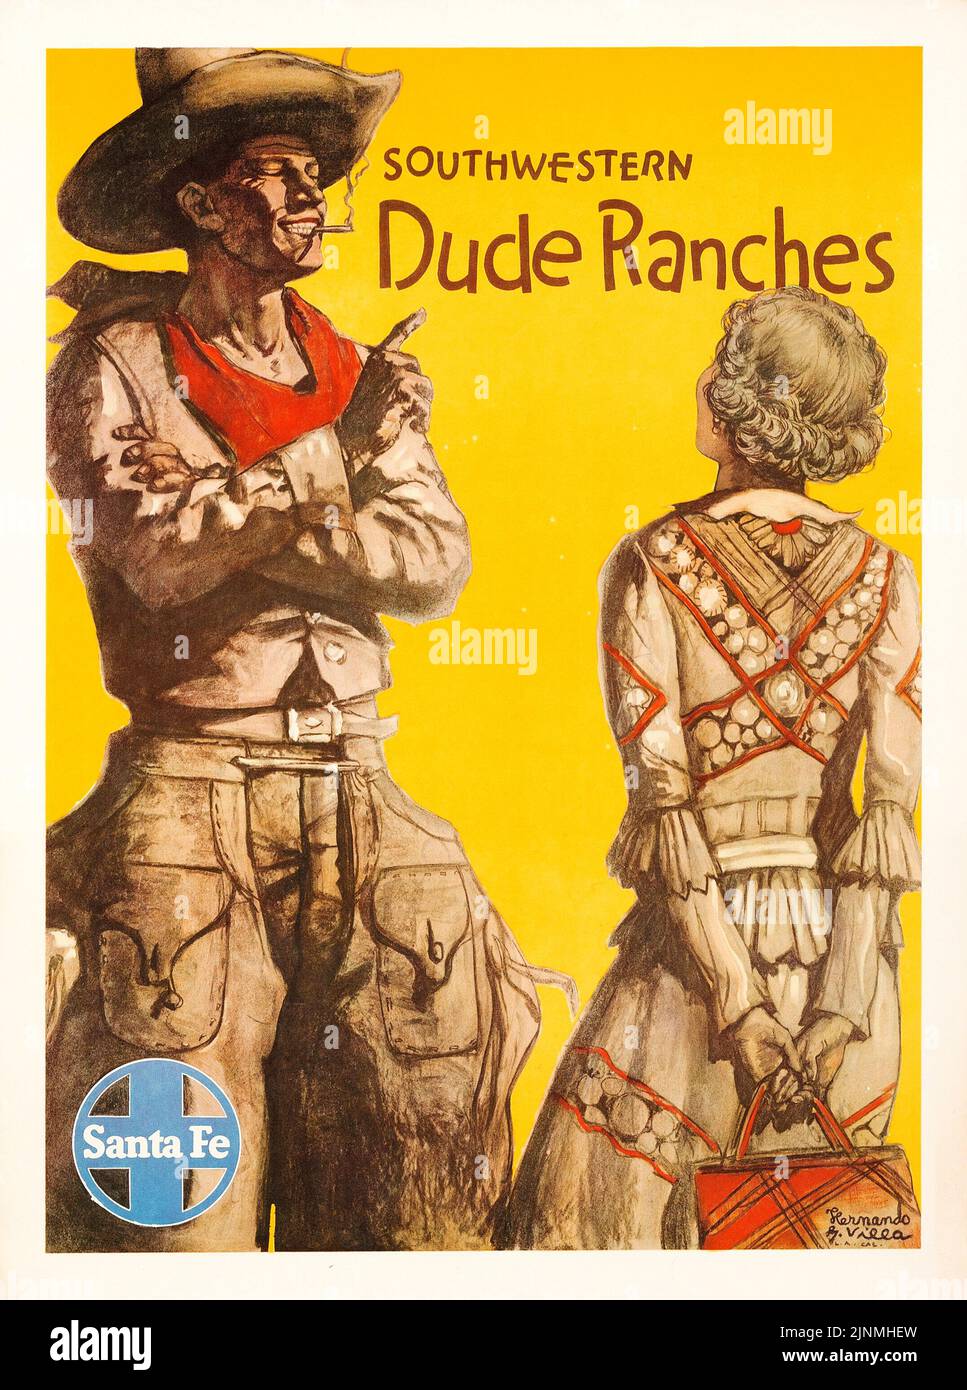 Ranches Dude du Sud-Ouest - chemin de fer de Santa Fe (1940s) Poster de voyage - Hernando Villa Artwork. Banque D'Images